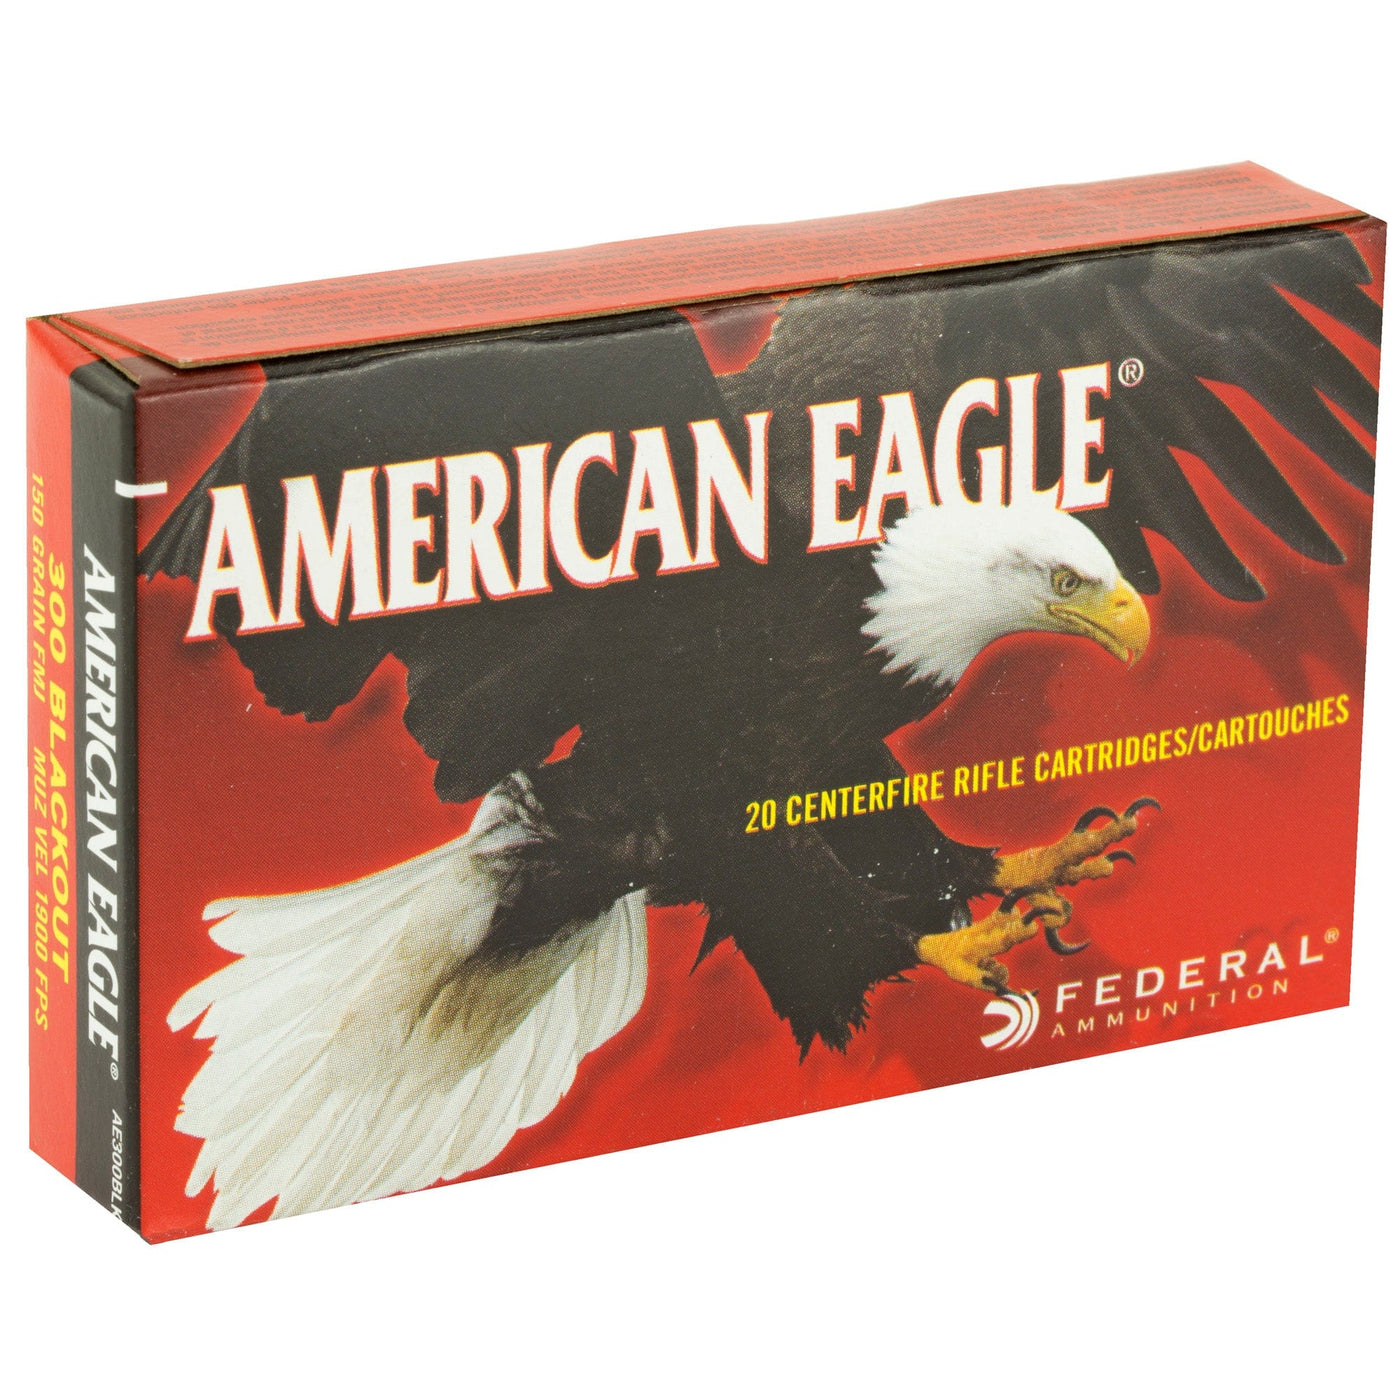 Federal Fed Am Eagle 300blk 150gr Fmj 20/500 Ammunition